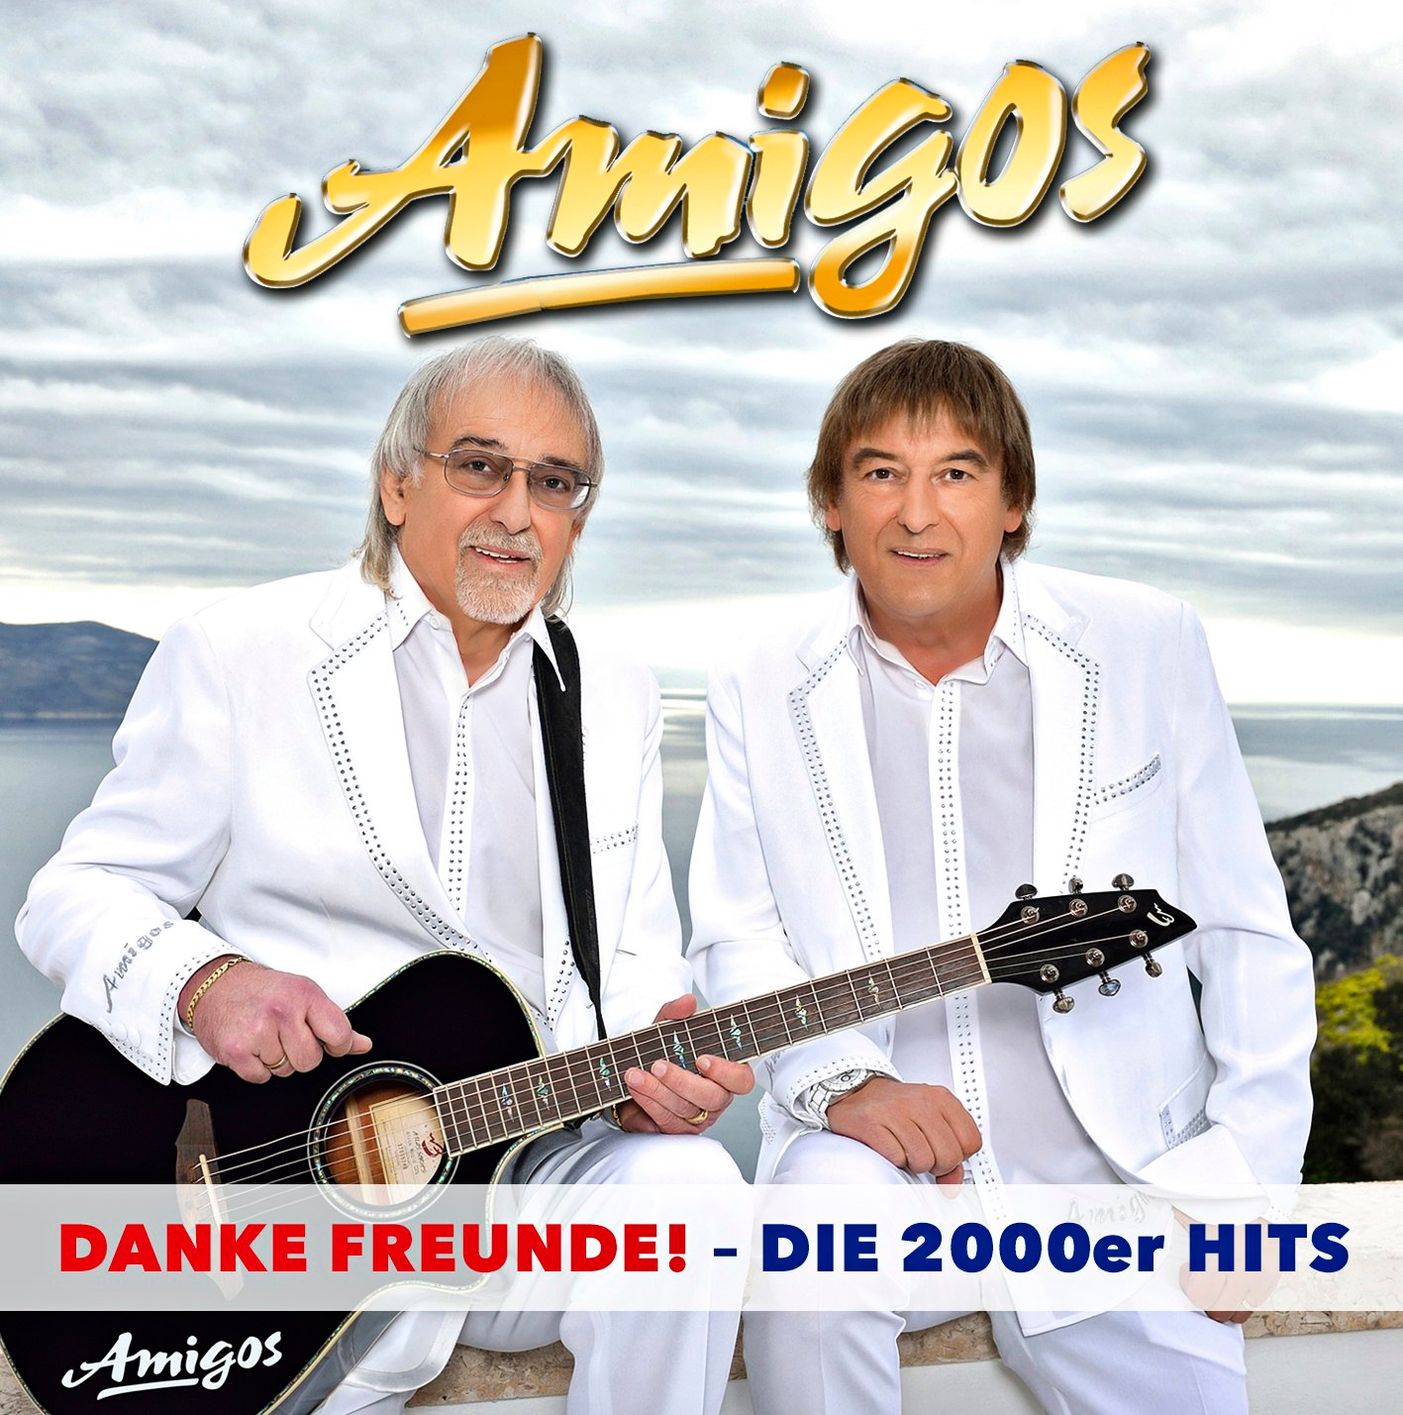 Danke Freunde - Die 2000er Hits 3 CDs CD von Amigos | Weltbild.ch